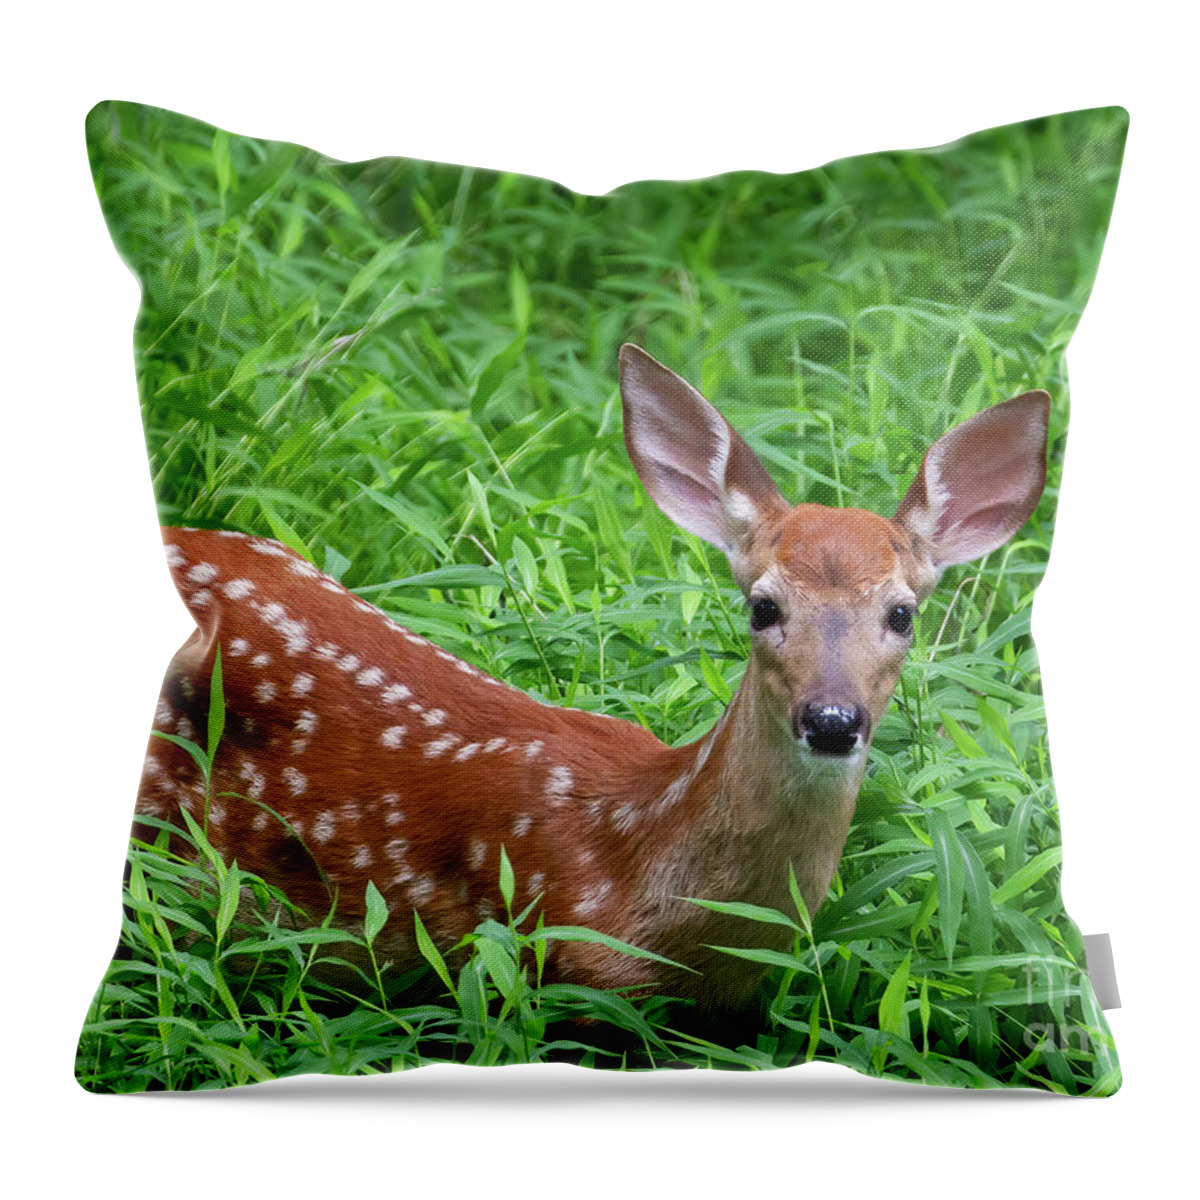 Deer Throw Pillow featuring the photograph Namaste Little Deer by Chris Scroggins